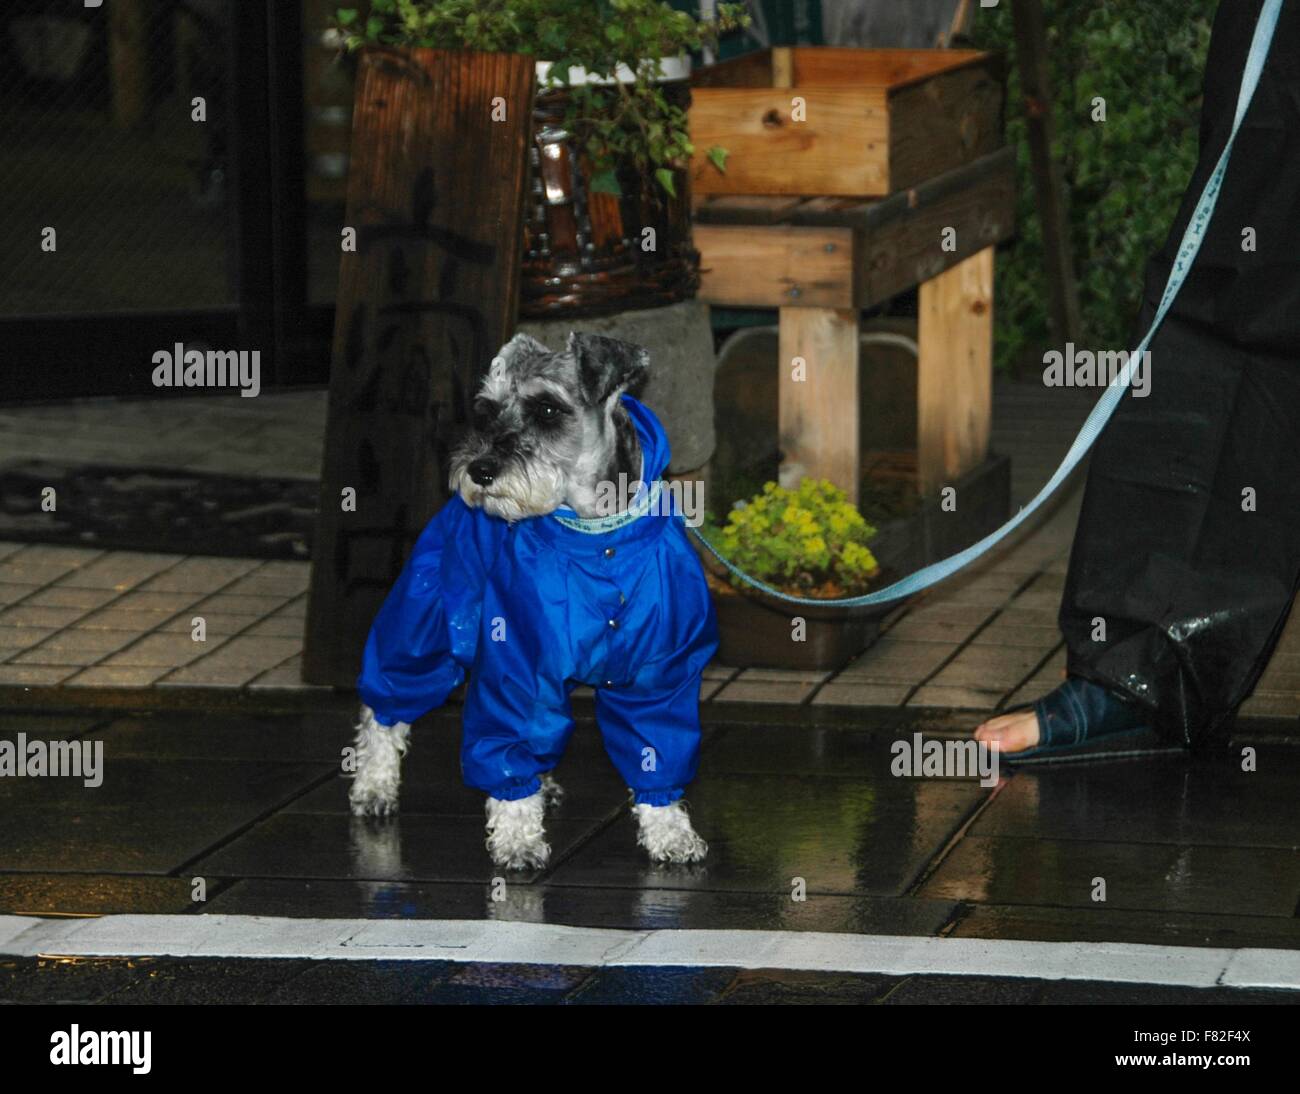 Beaucoup de gens au Japon comme pour habiller leurs chiens, surtout par mauvais temps. Banque D'Images